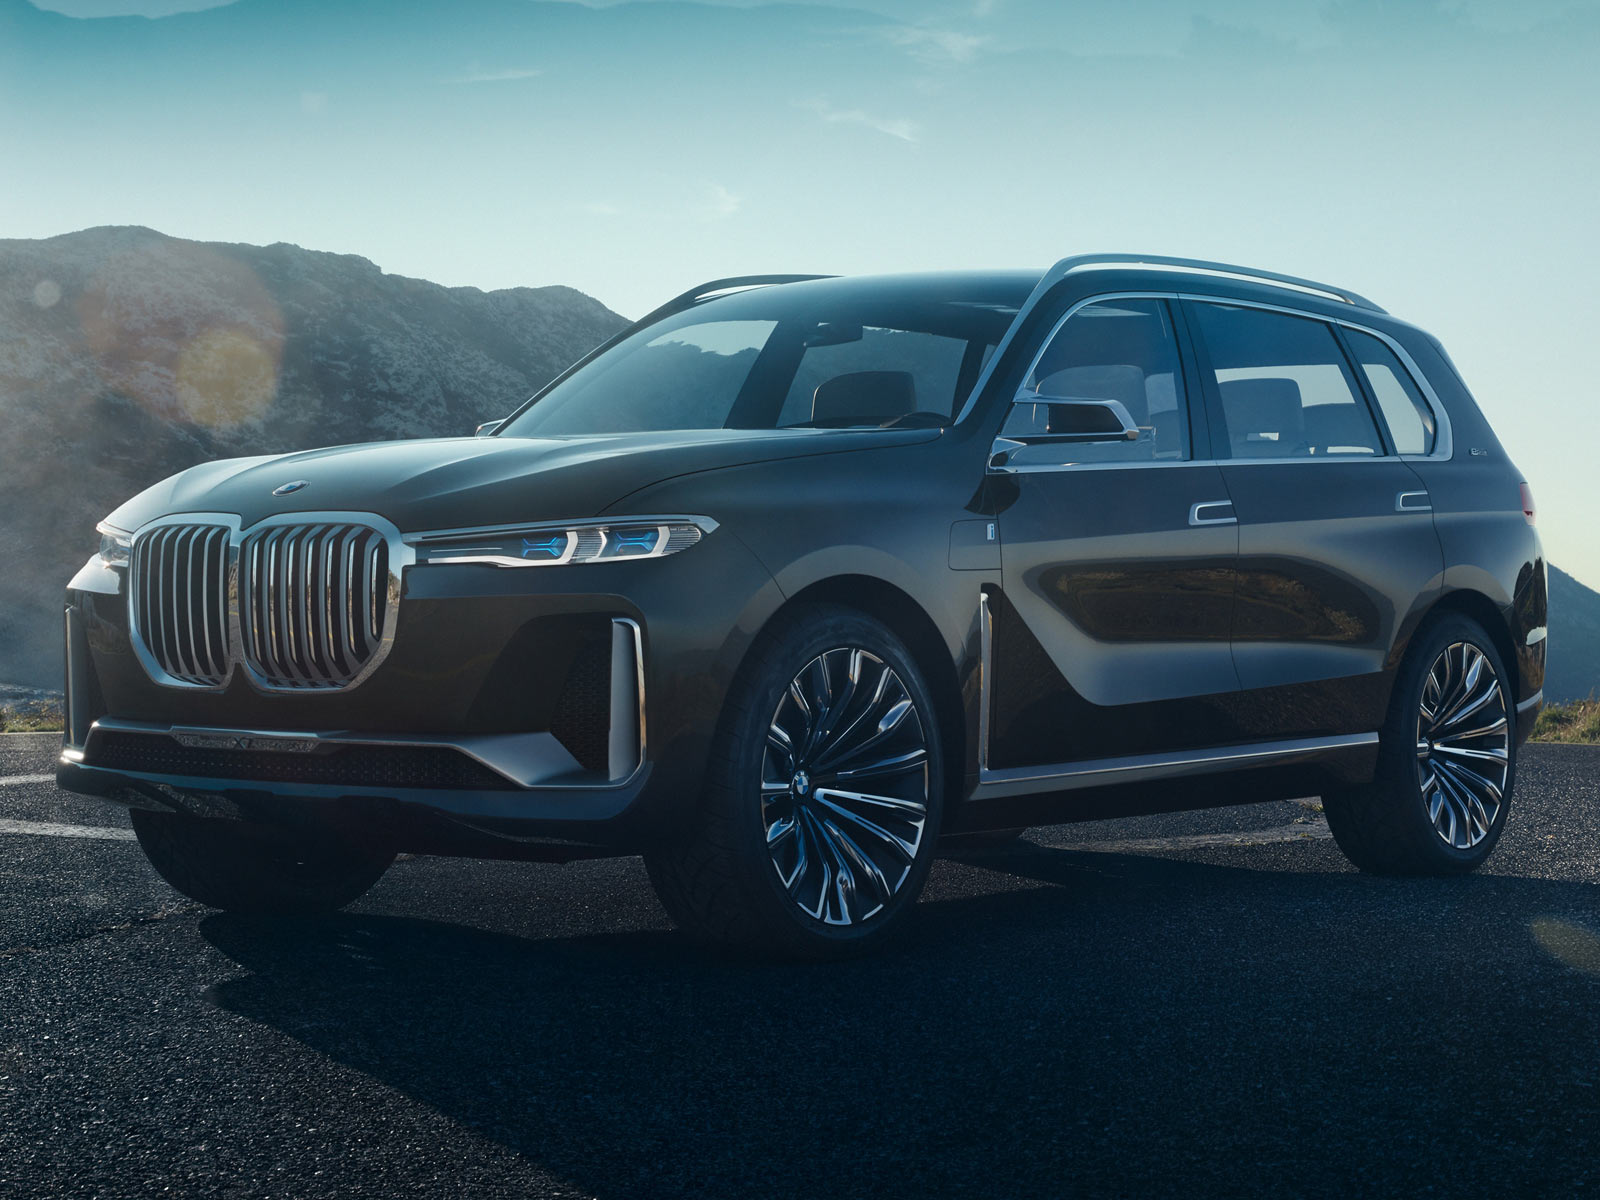 Chiêm ngưỡng X7 iPerformance Concept của BMW, đối thủ tương lai của Mercedes GLS - ảnh 2